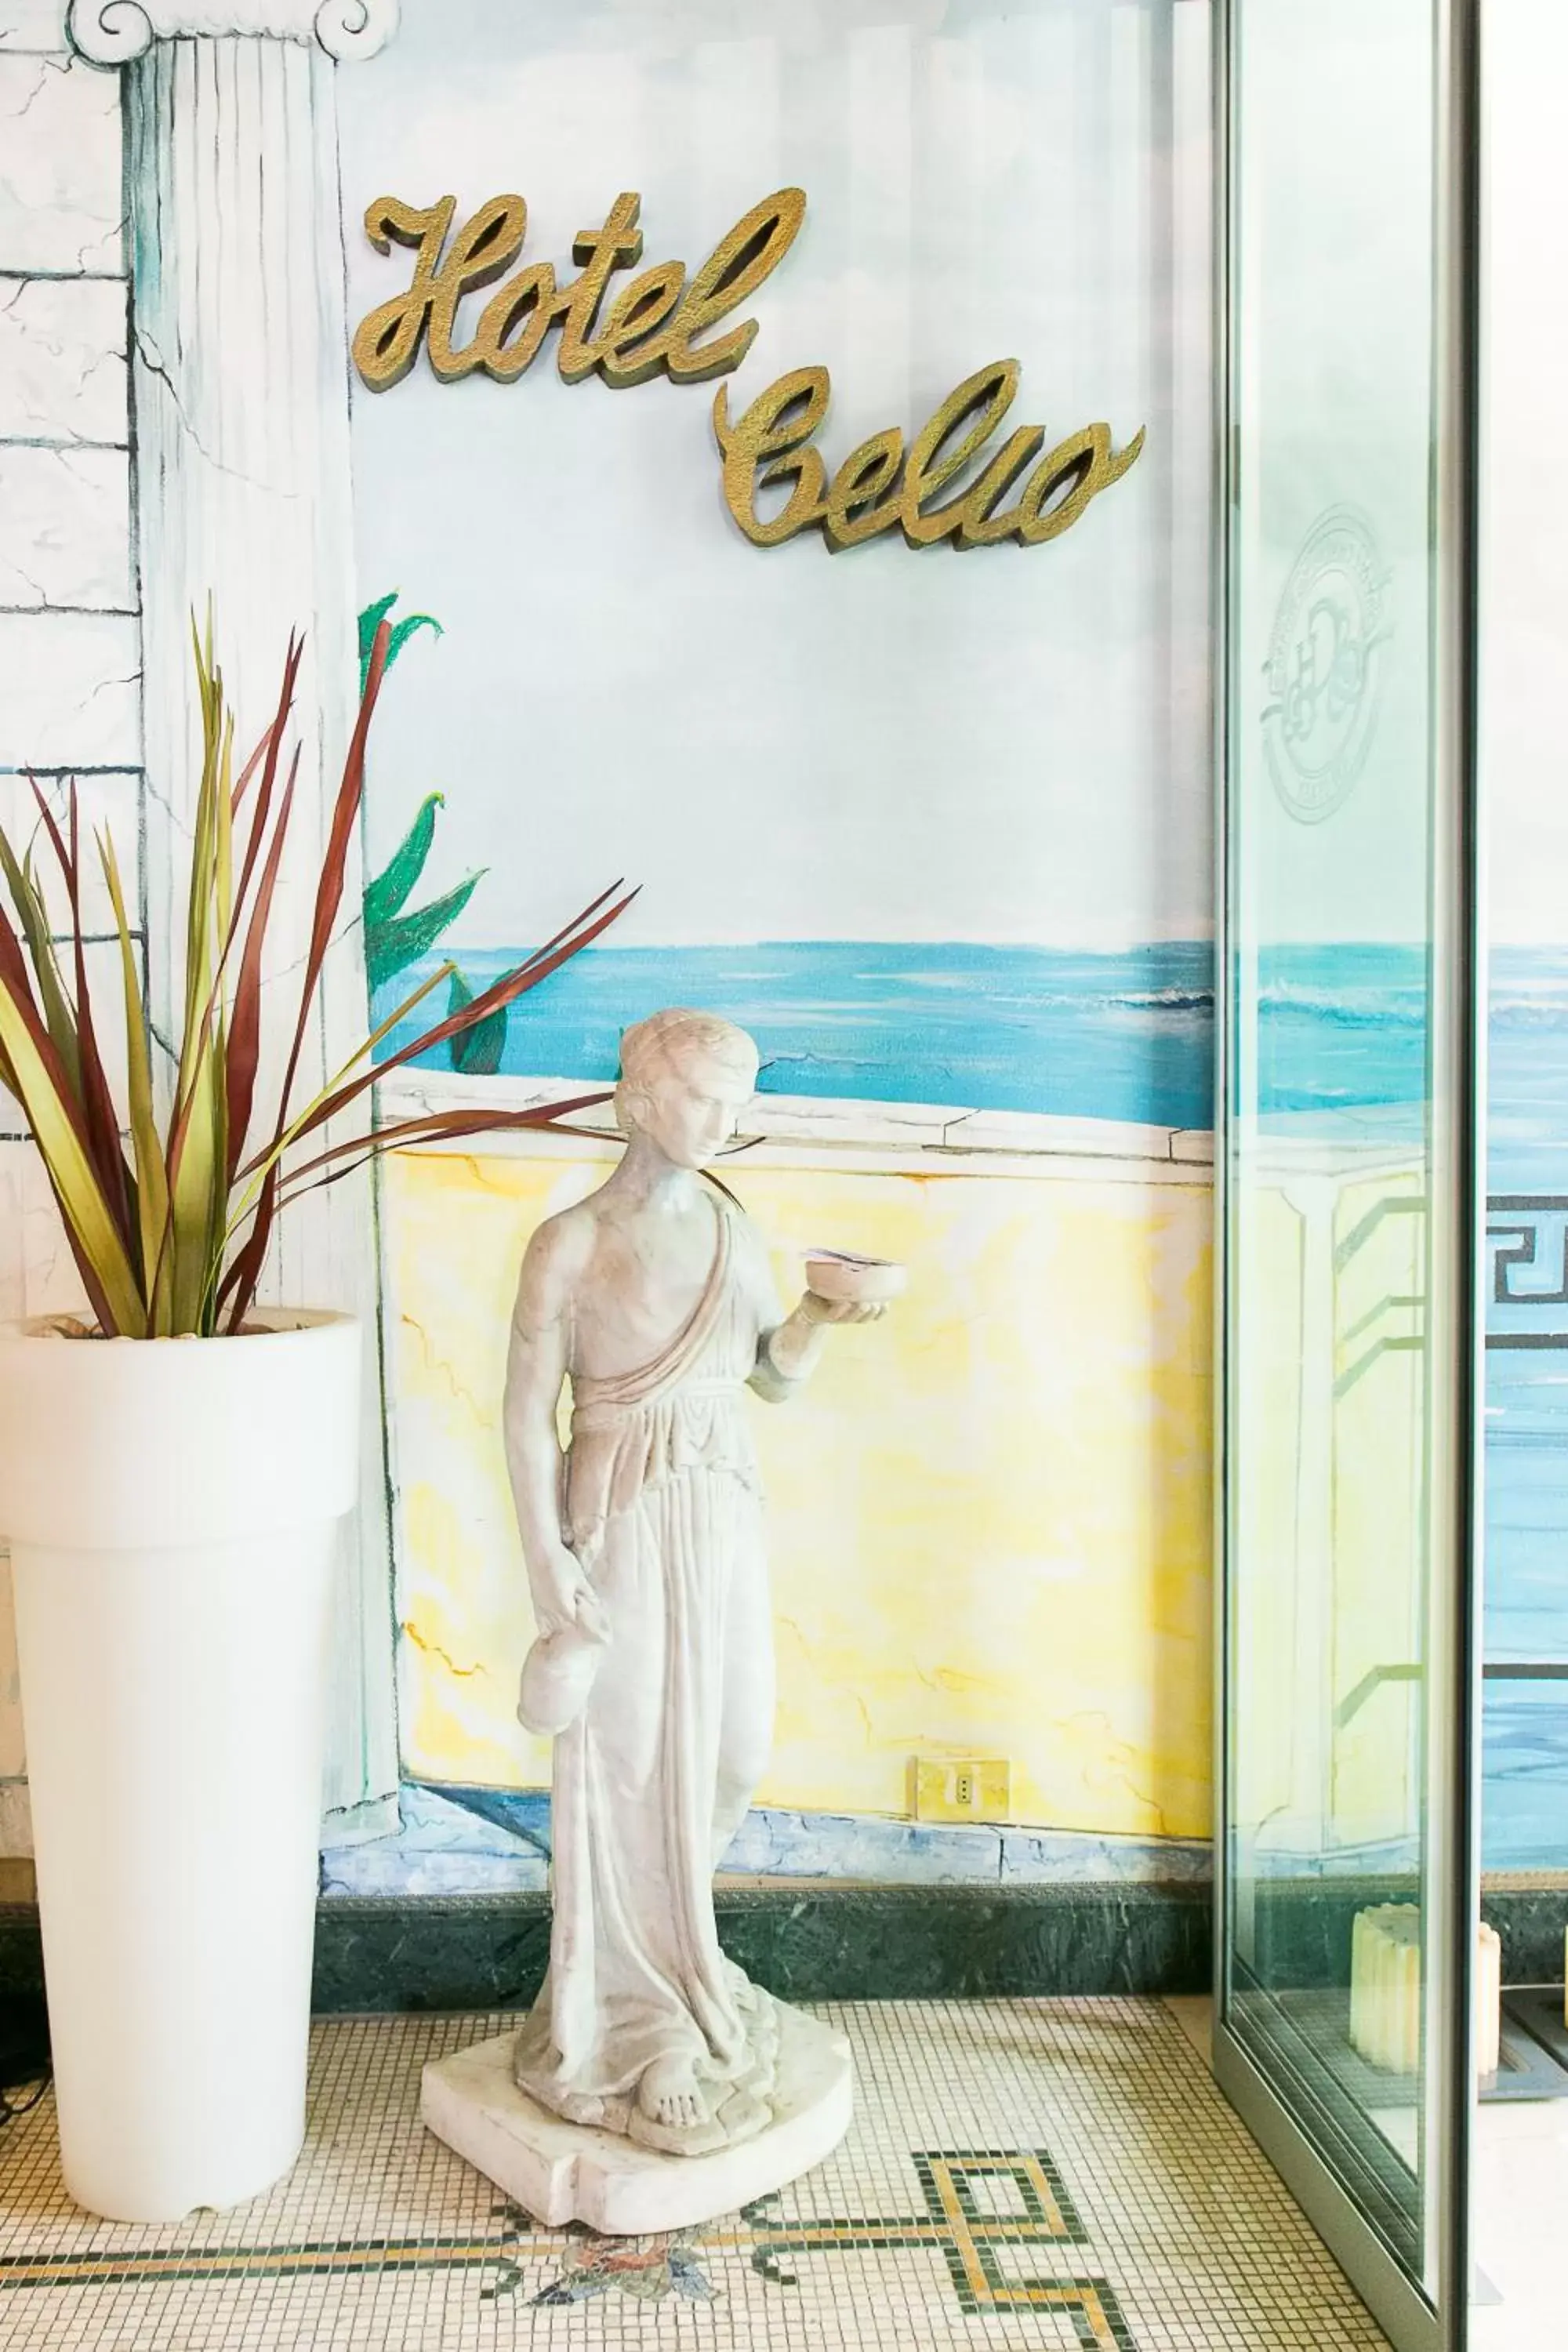 Decorative detail in Hotel Celio